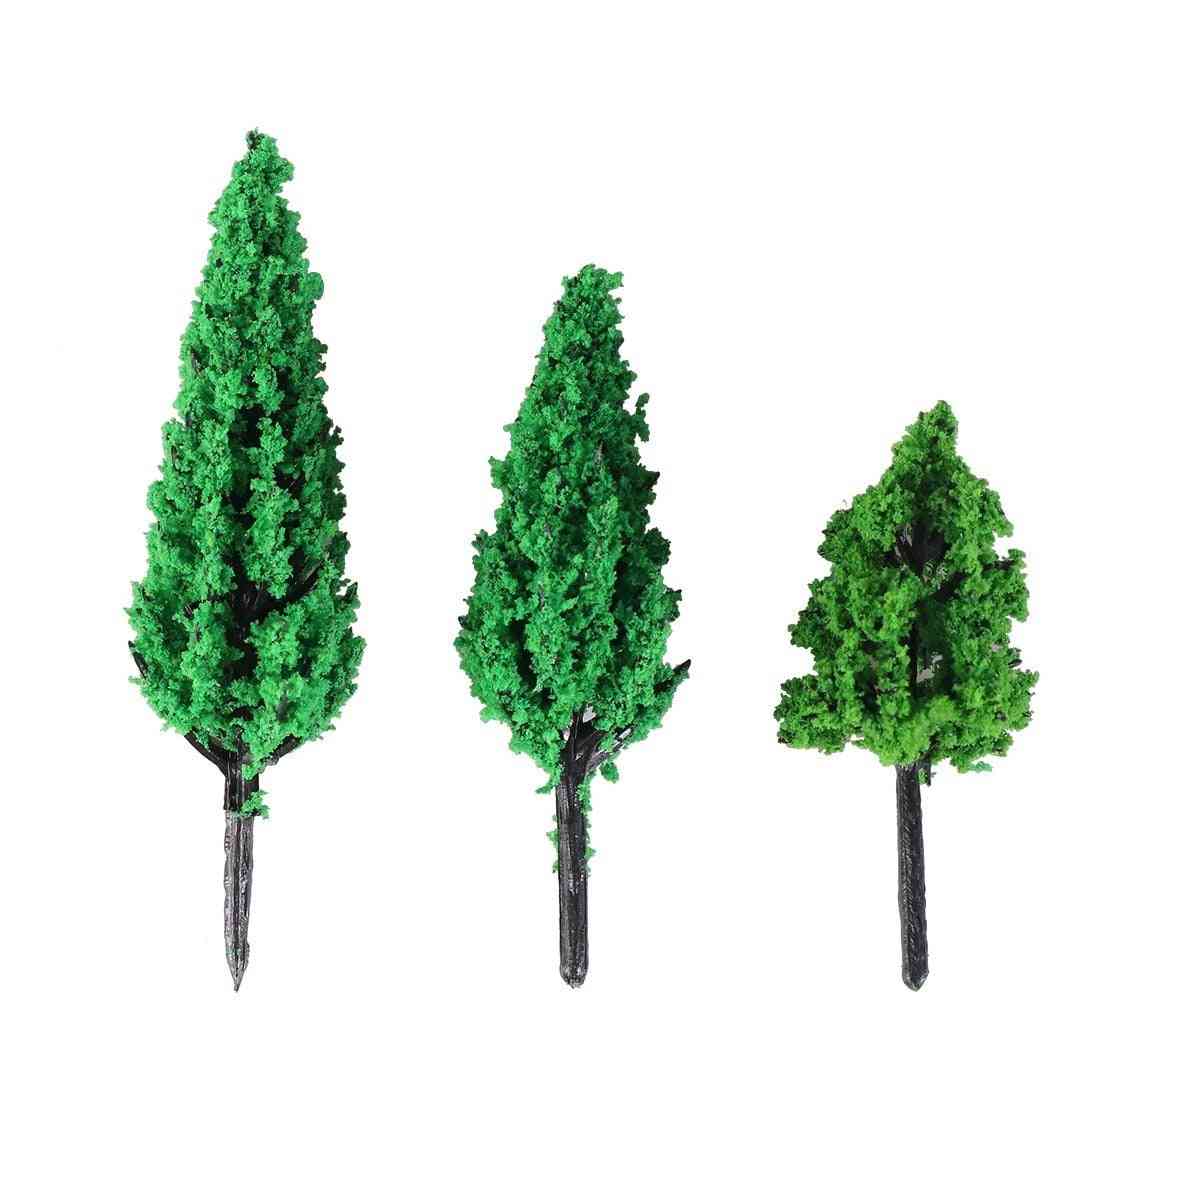 Bäume Park Kiefer Pappel Wald Pagode Miniatur Diorama Mikro Layout Landschaft Dekoration Miniaturen Bäume -